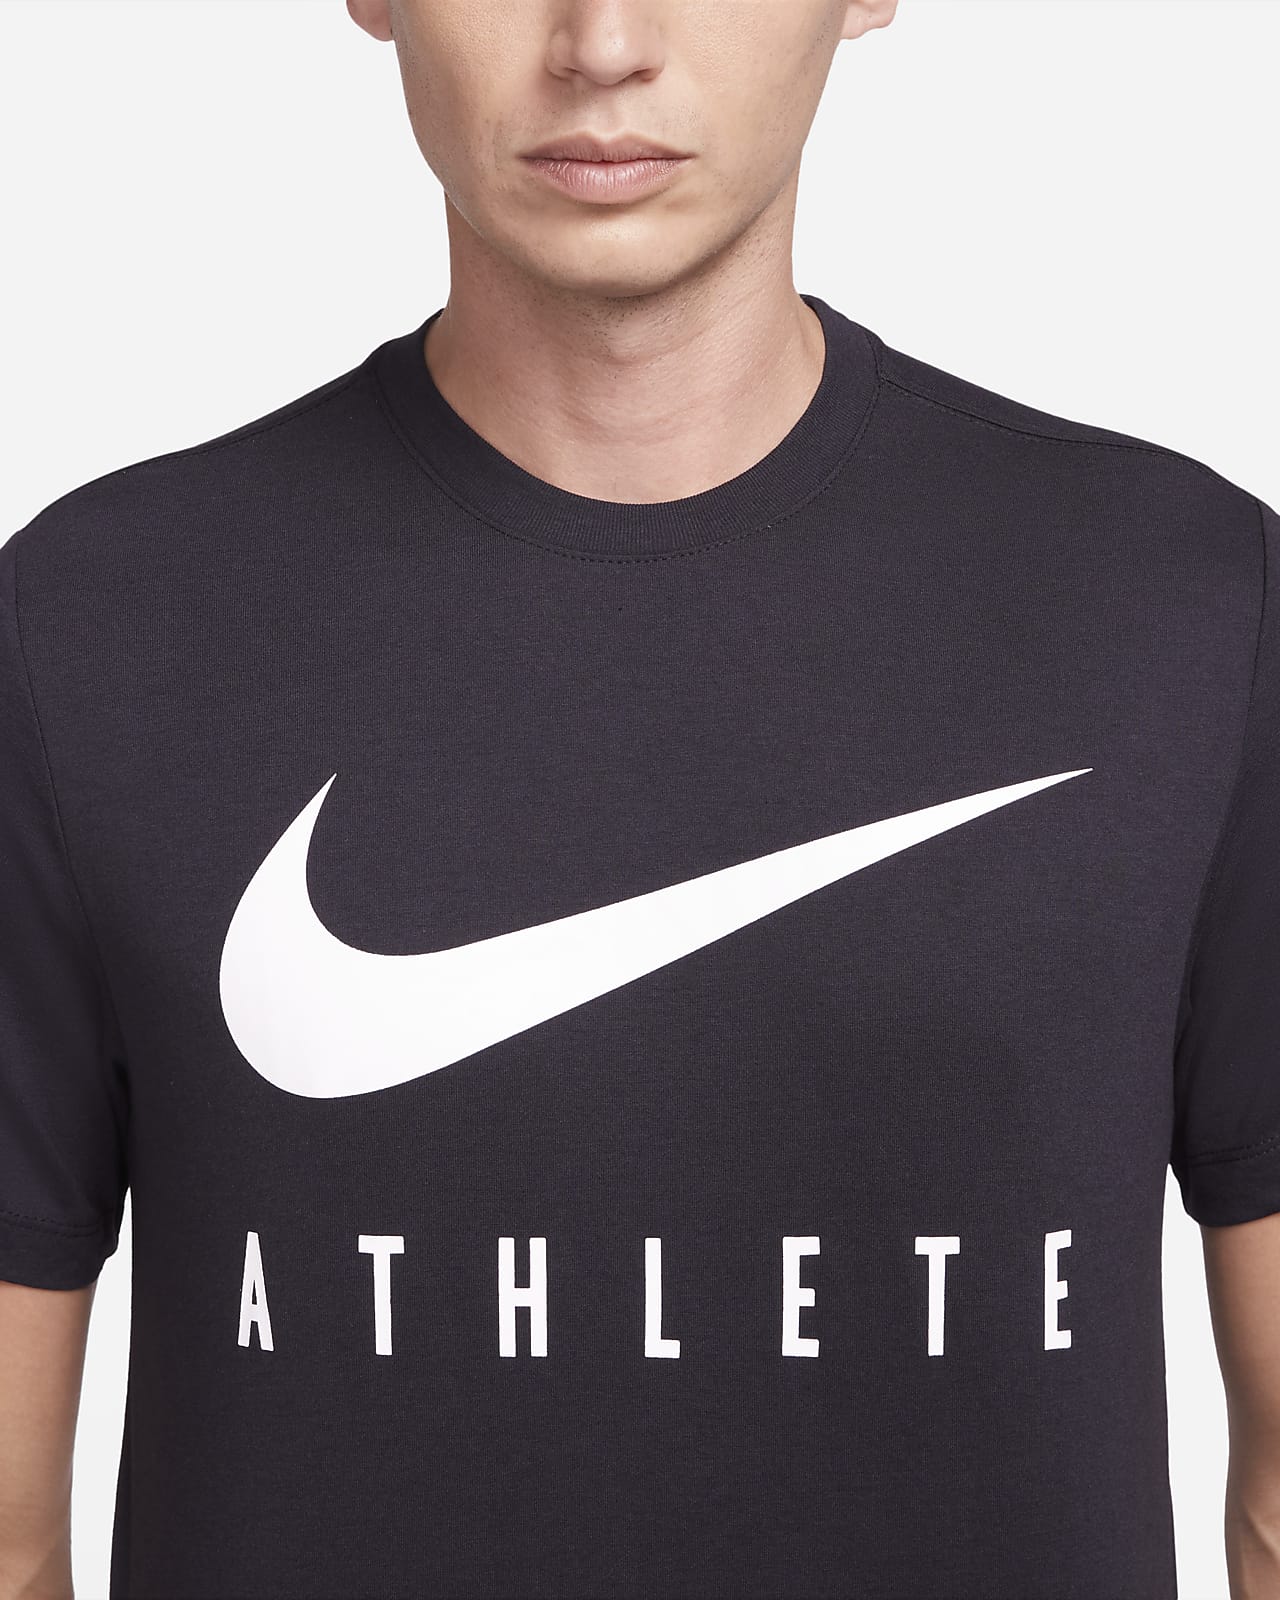 Nike Dri-FIT Men's Training T-Shirt.